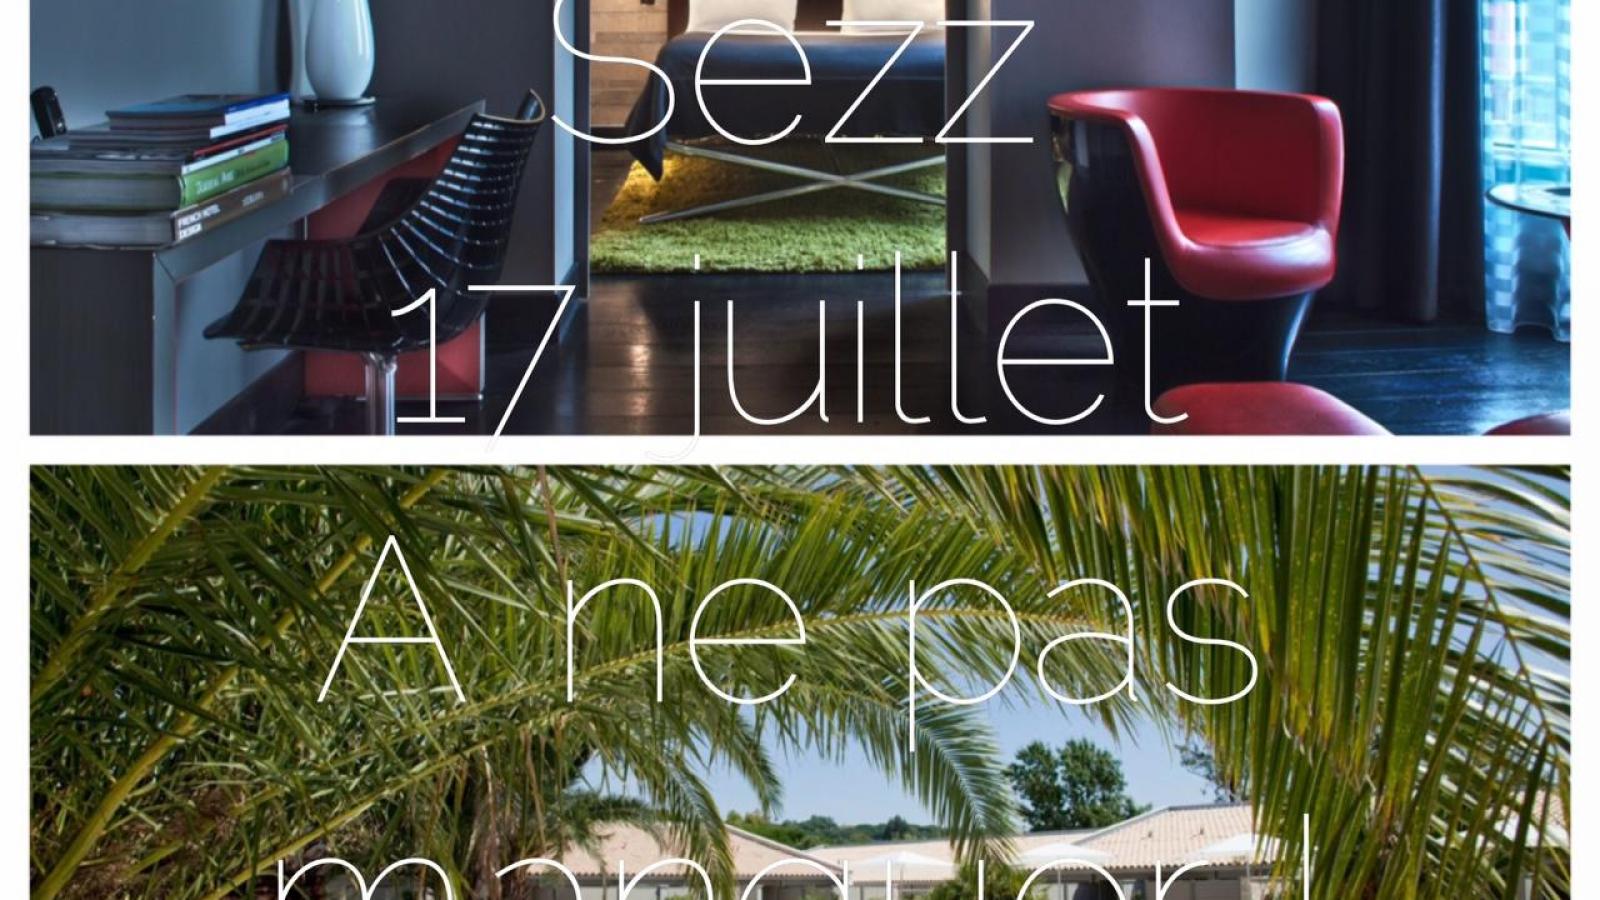 Quizz Hotels Sezz sur notre page Facebook !